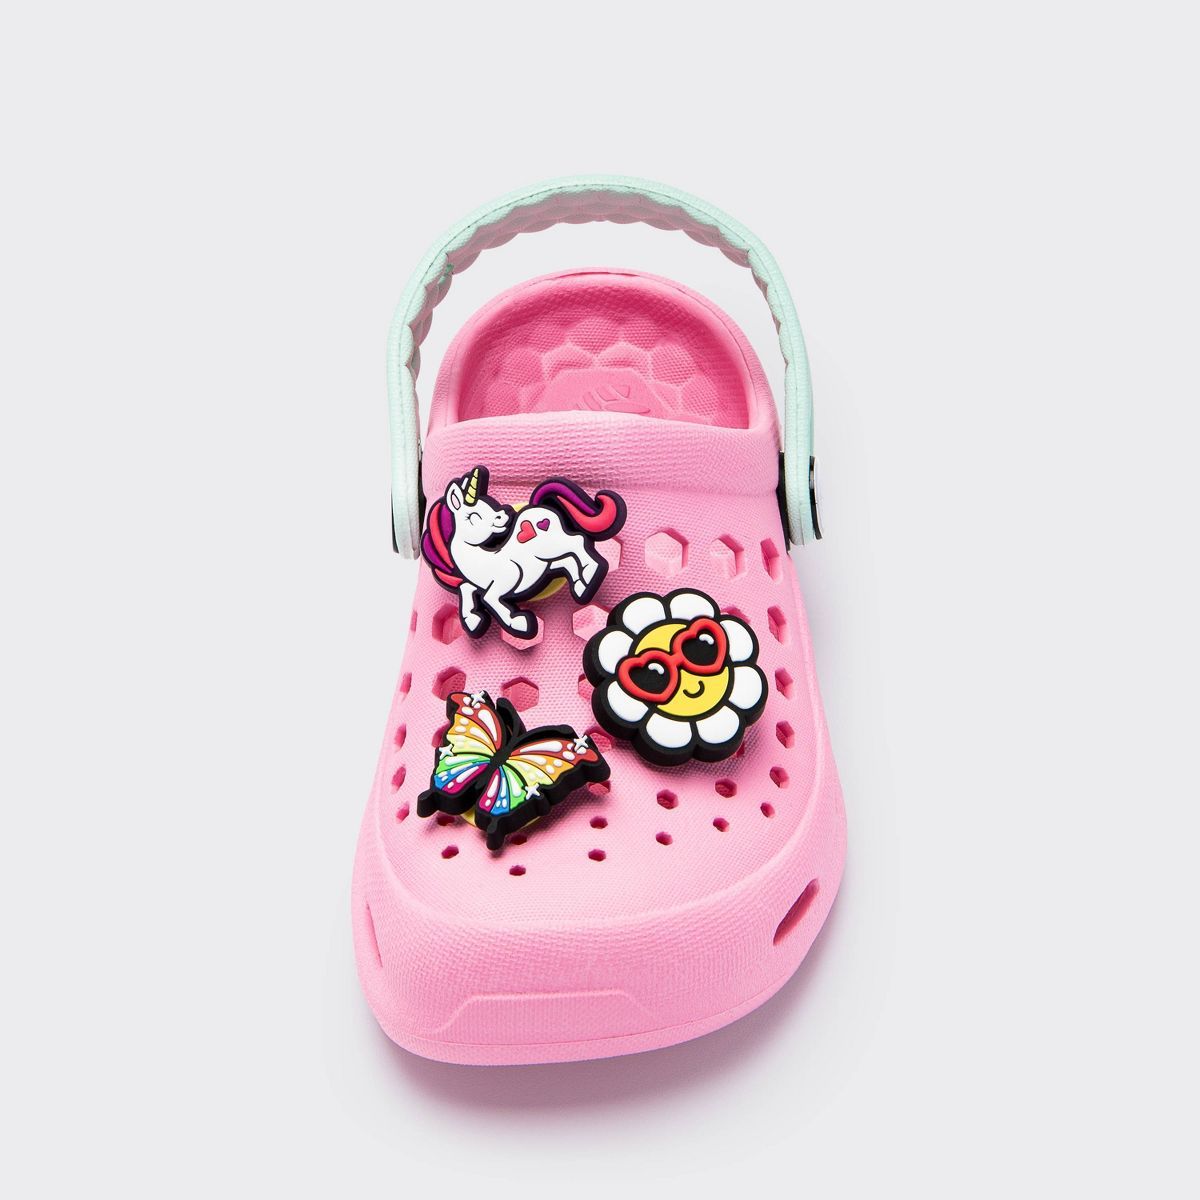 Joybees Popinz Girl Shoe Charms - 3pk | Target